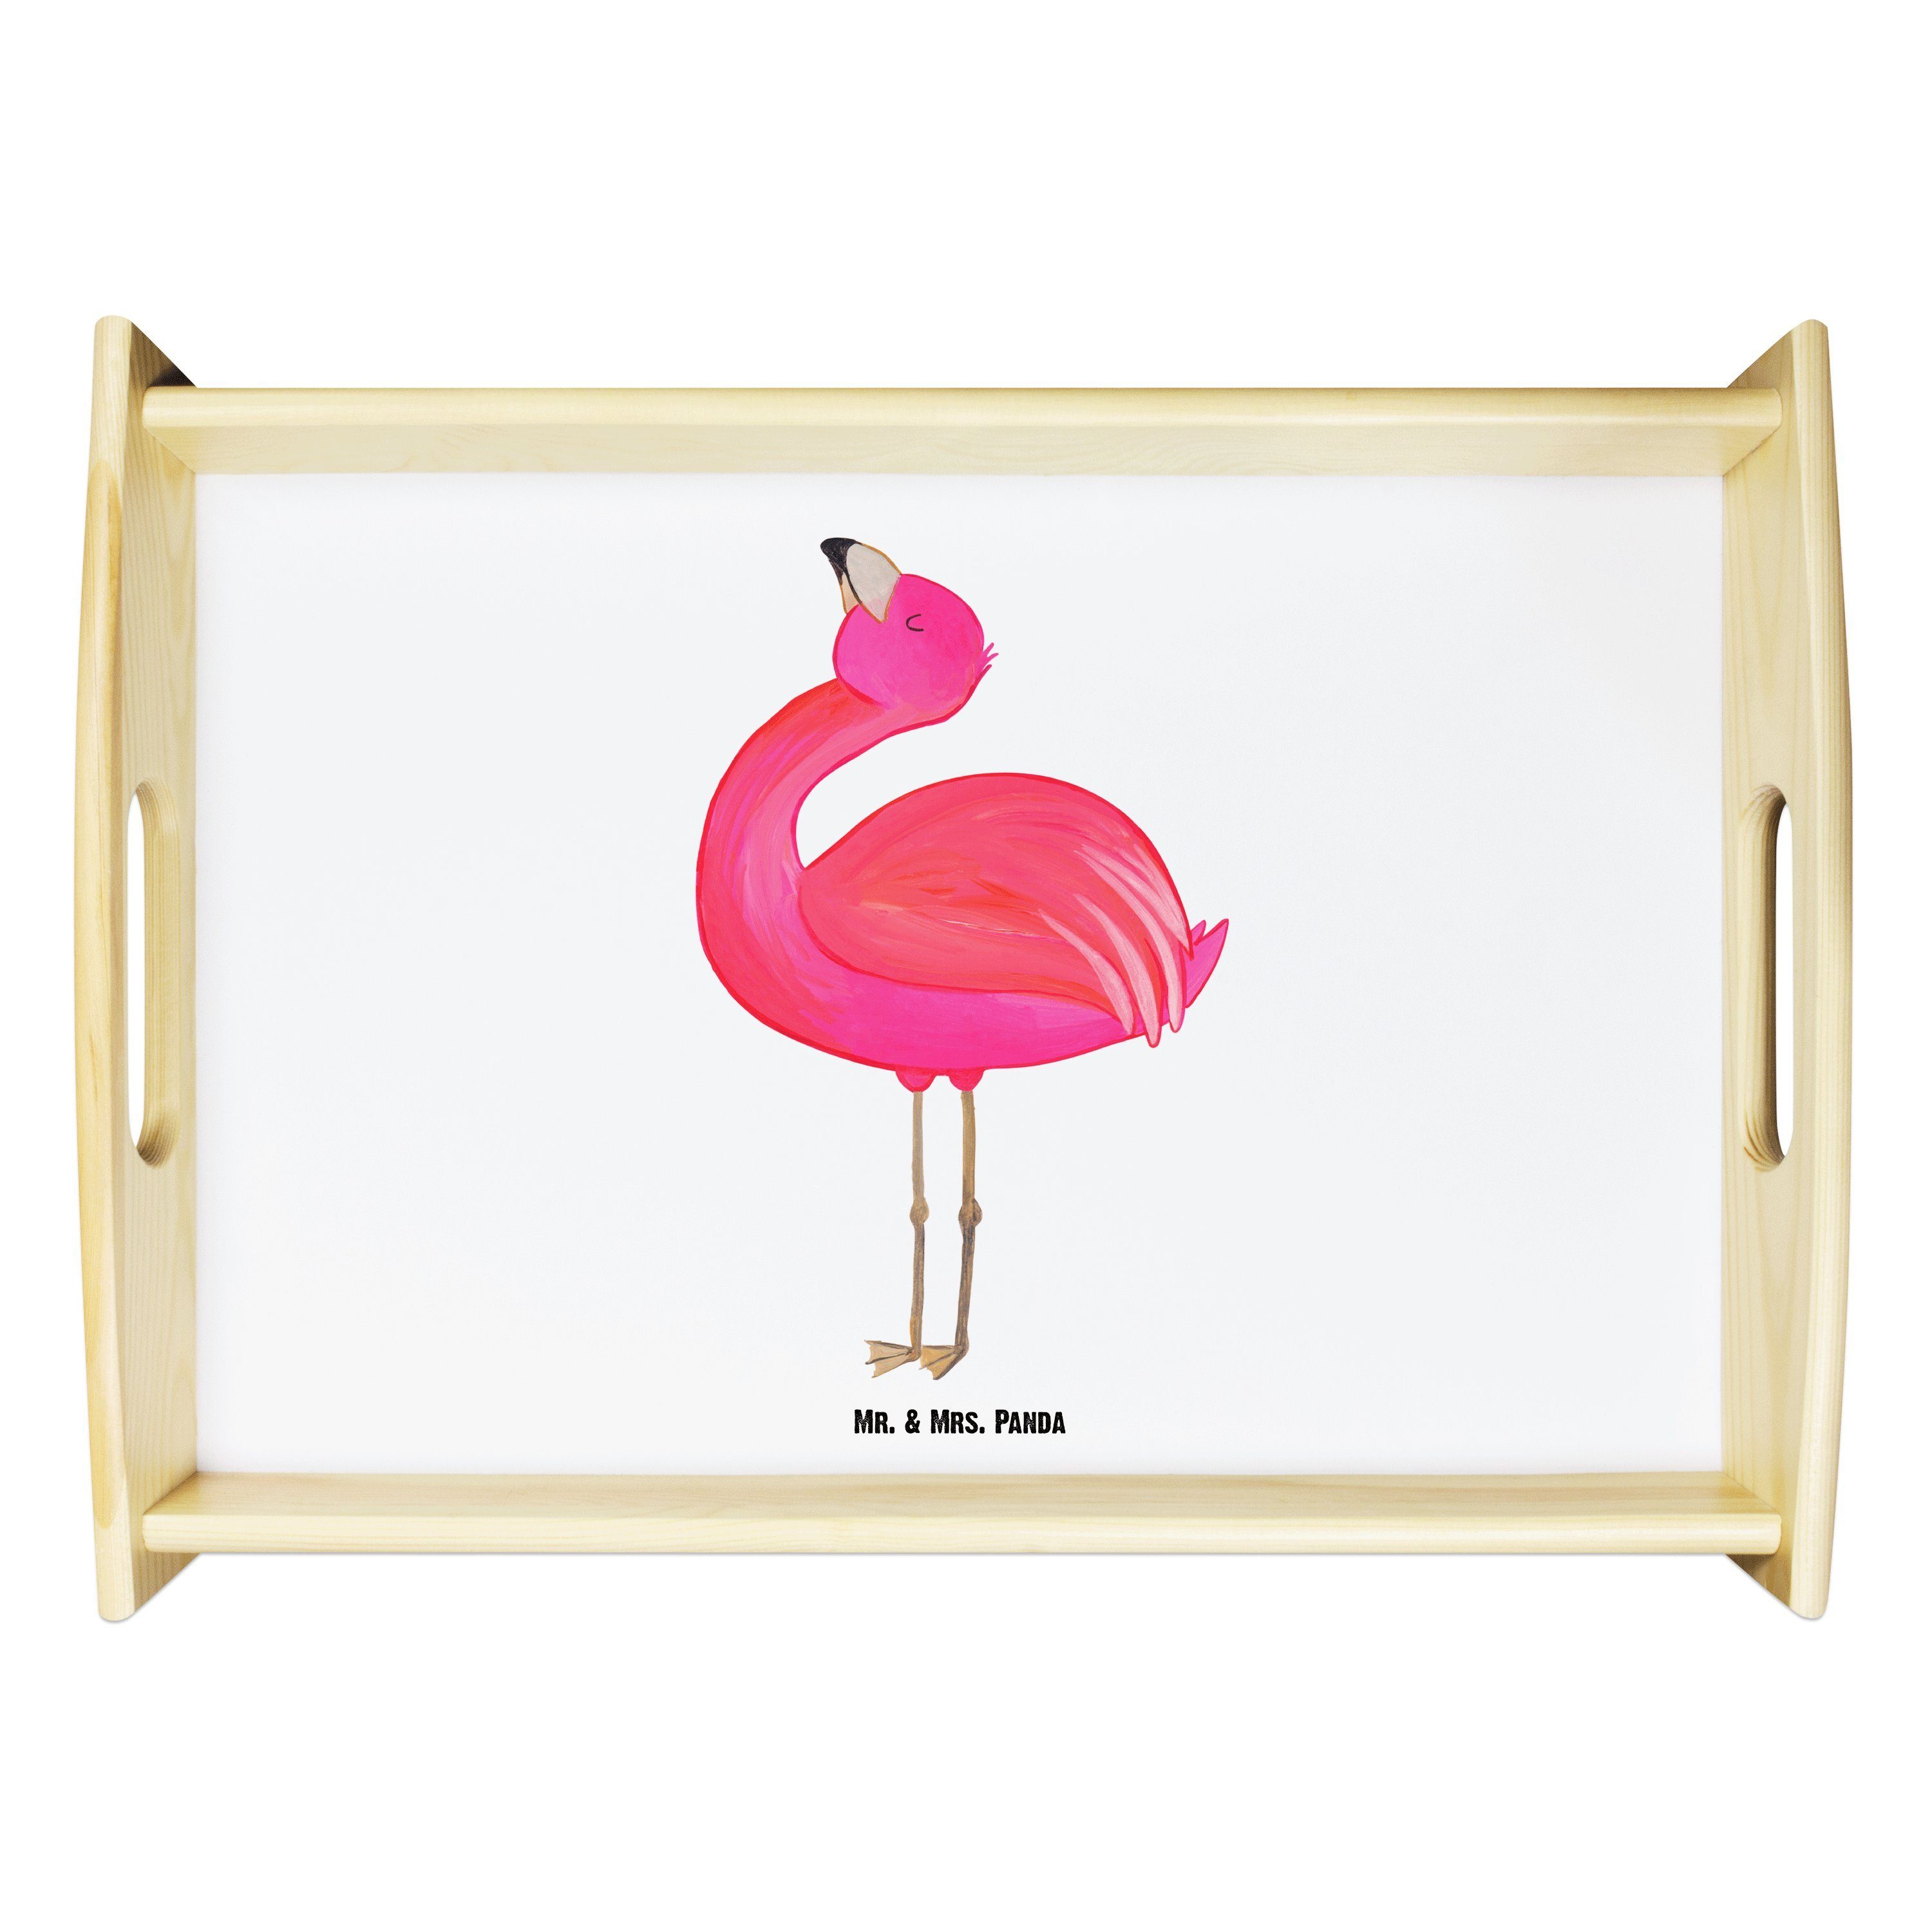 Mr. & Mrs. Panda Tablett Flamingo stolz - Weiß - Geschenk, Tablett, Freude, Selbstakzeptanz, S, Echtholz lasiert, (1-tlg)